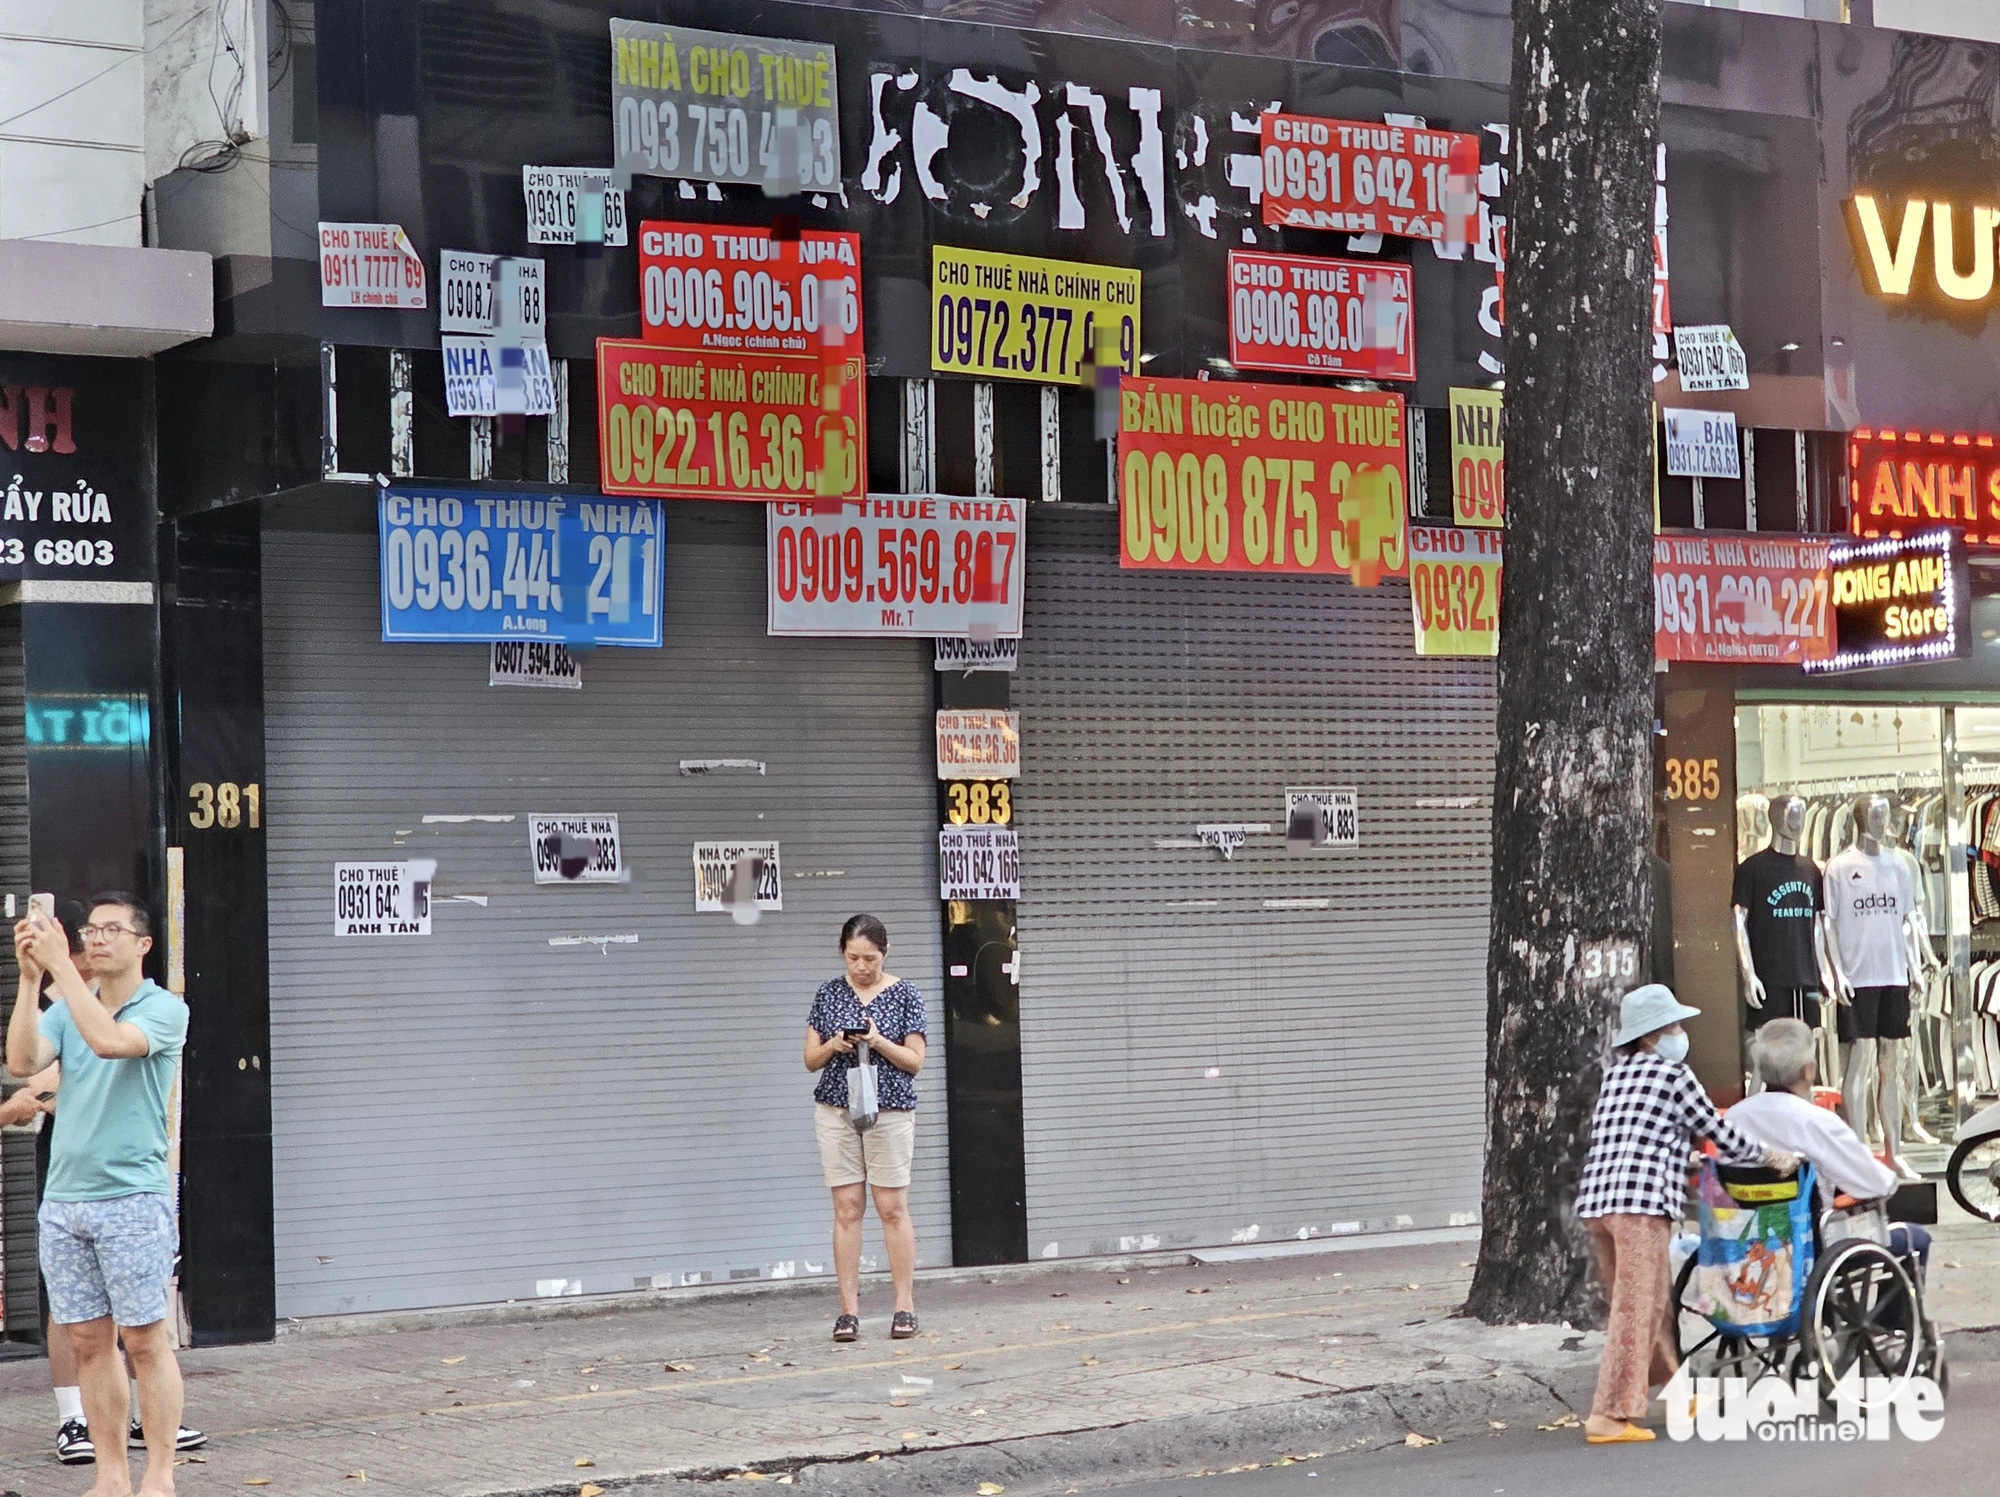 Trên con đường thời trang Nguyễn Trãi, có rất nhiều cửa hàng đã đóng cửa và chi chít những mẩu quảng cáo bán, cho thuê mặt bằng - Ảnh: NGỌC HIỂN